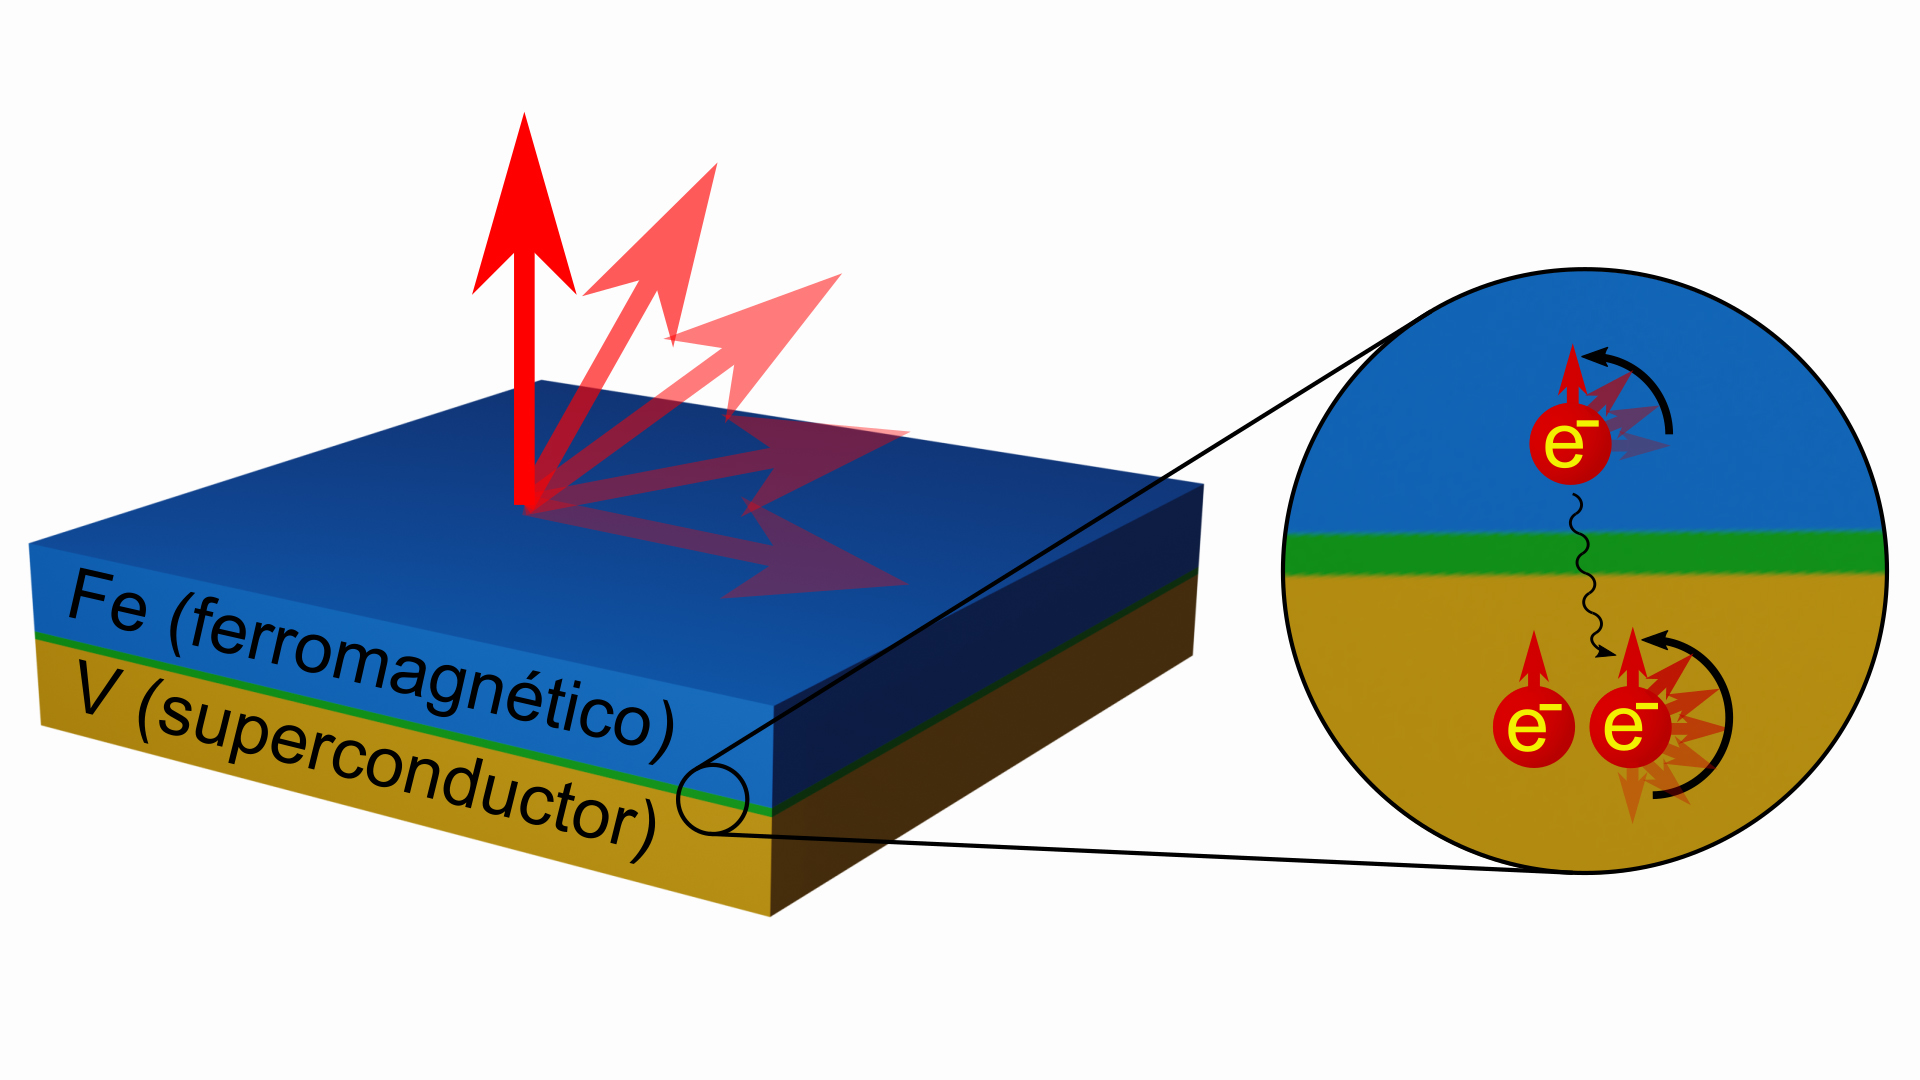 Imagen de un esquema simplificado de los dispositivos estudiados, en el que se representa la imanación de la capa ferromagnética pasando de una orientación en el plano de la misma hacia una orientación perpendicular bajo el efecto de la superconductividad.